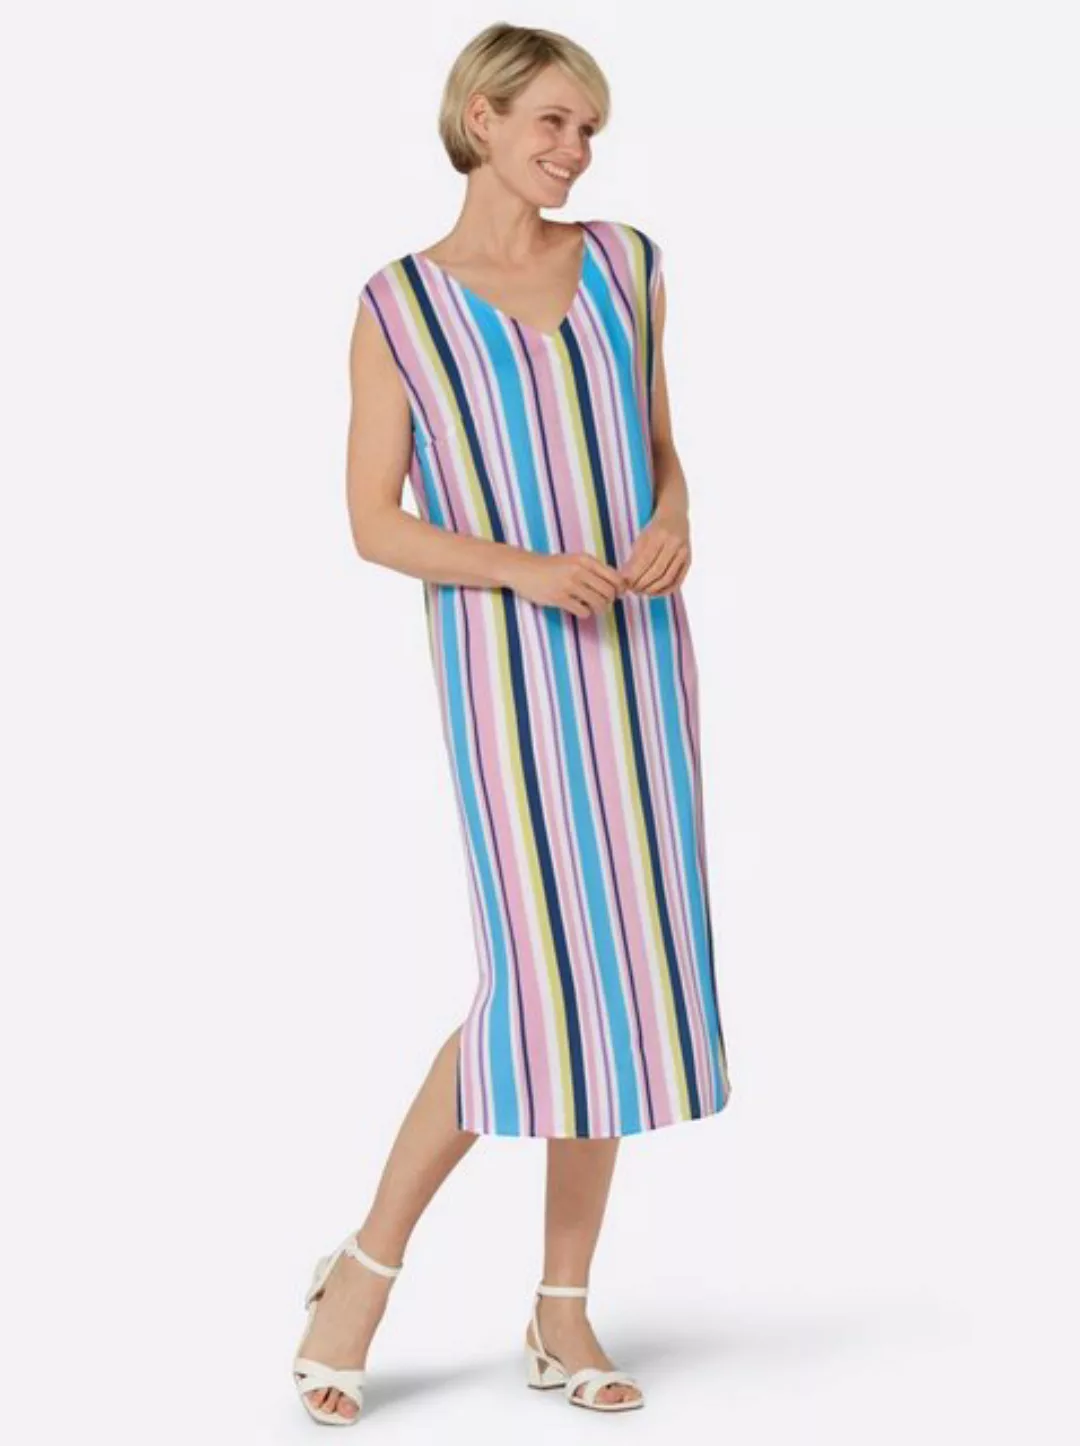 Sieh an! Etuikleid Sommerkleid günstig online kaufen